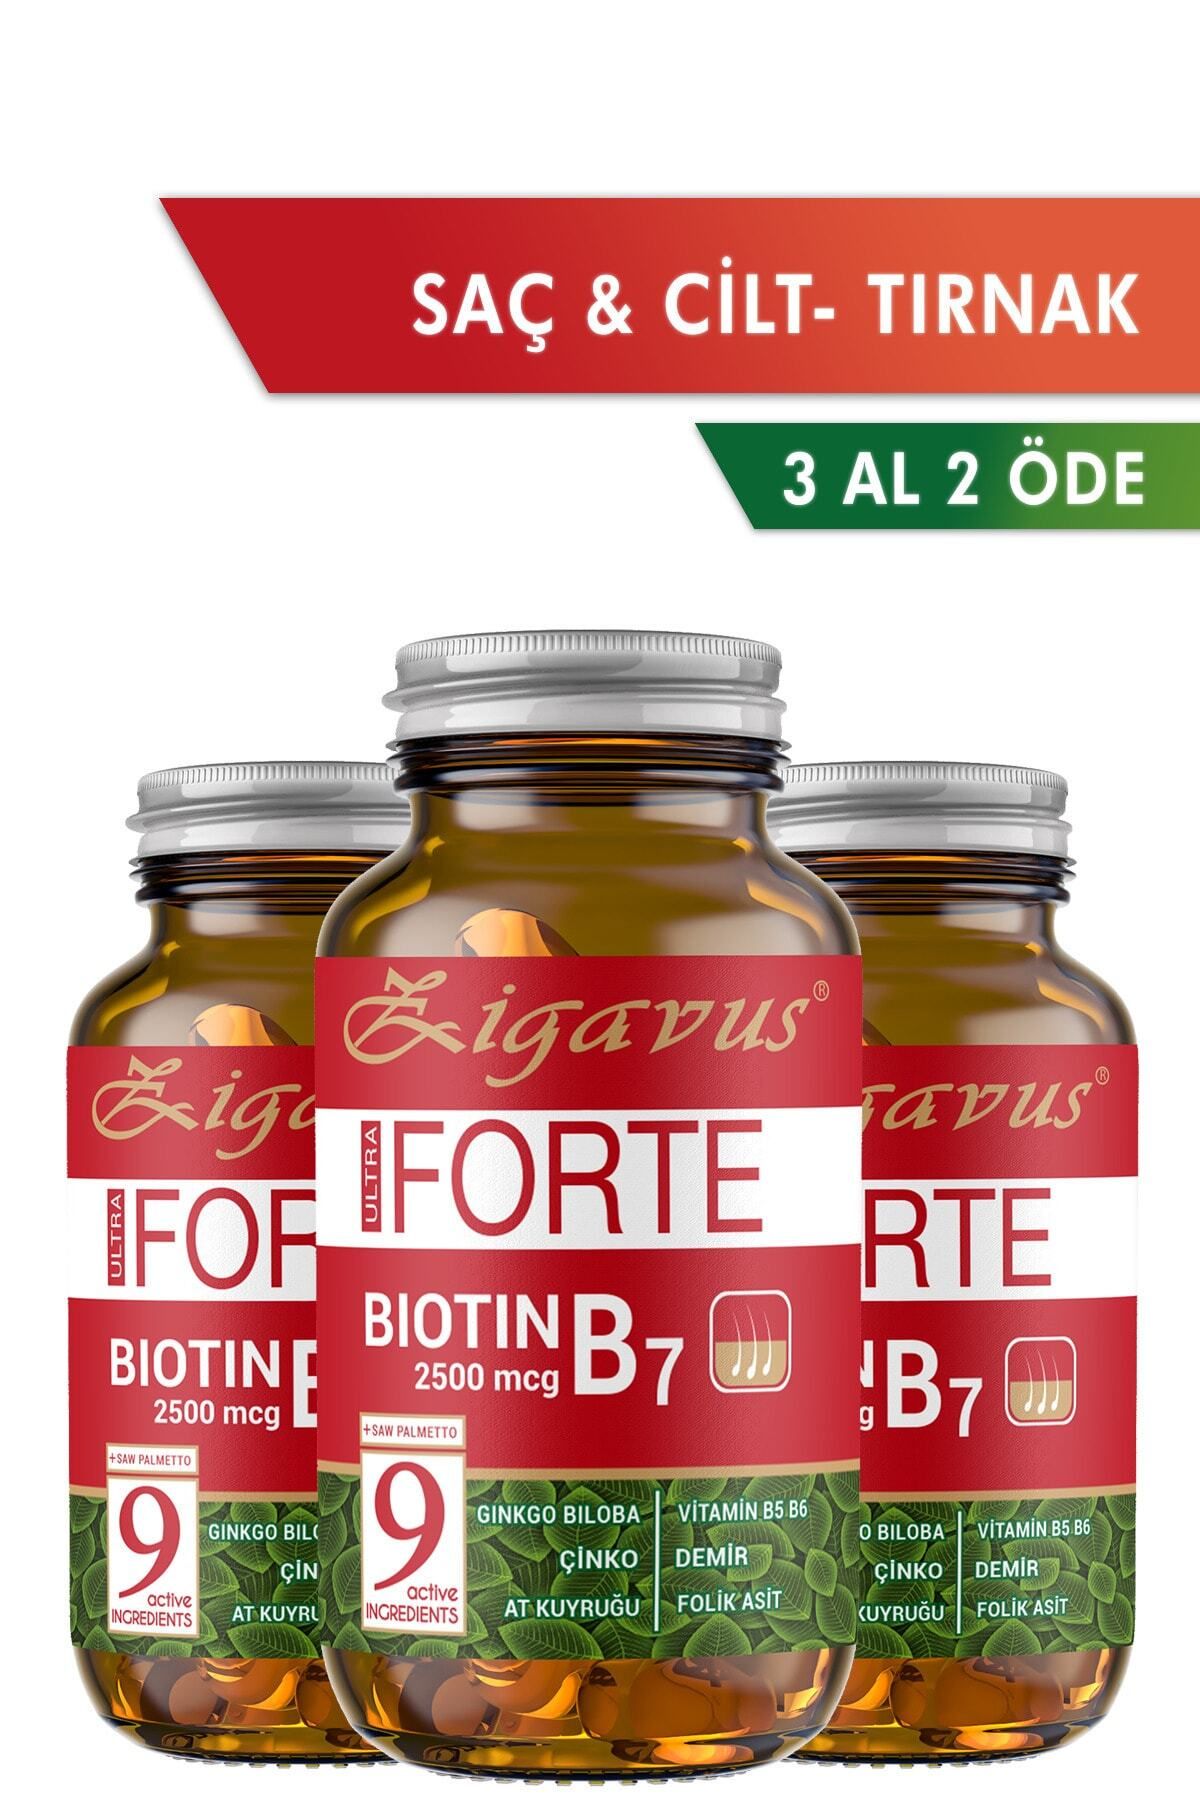 Zigavus Forte Biotin Tablet Saç, Tırnak ve Cilt İçin Güçlendirici Gıda Takviyesi B7 Çinko 3 Al 2 Öde